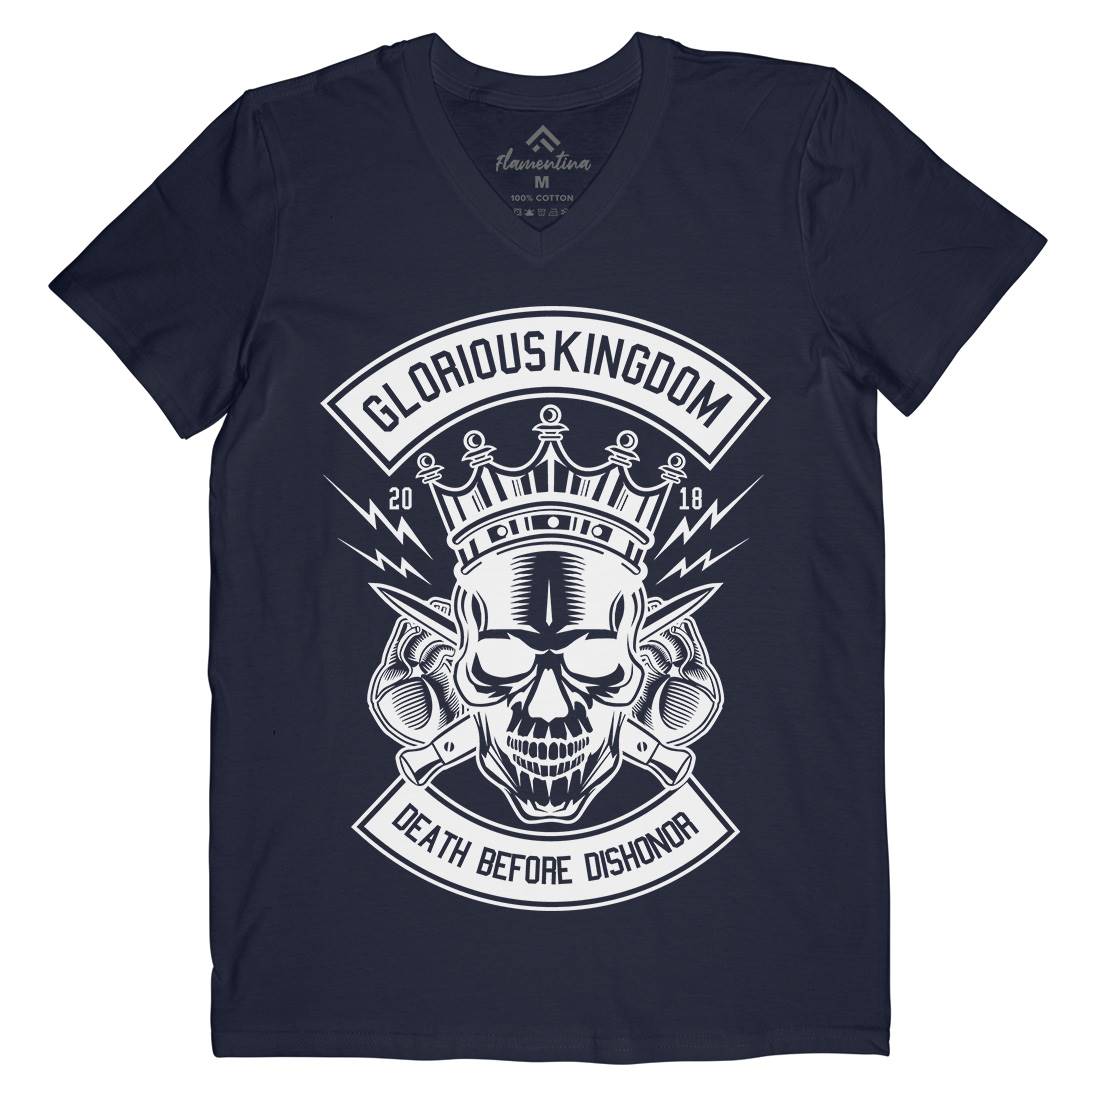 Glorious Kingdom Mens Organic V-Neck T-Shirt Retro B546